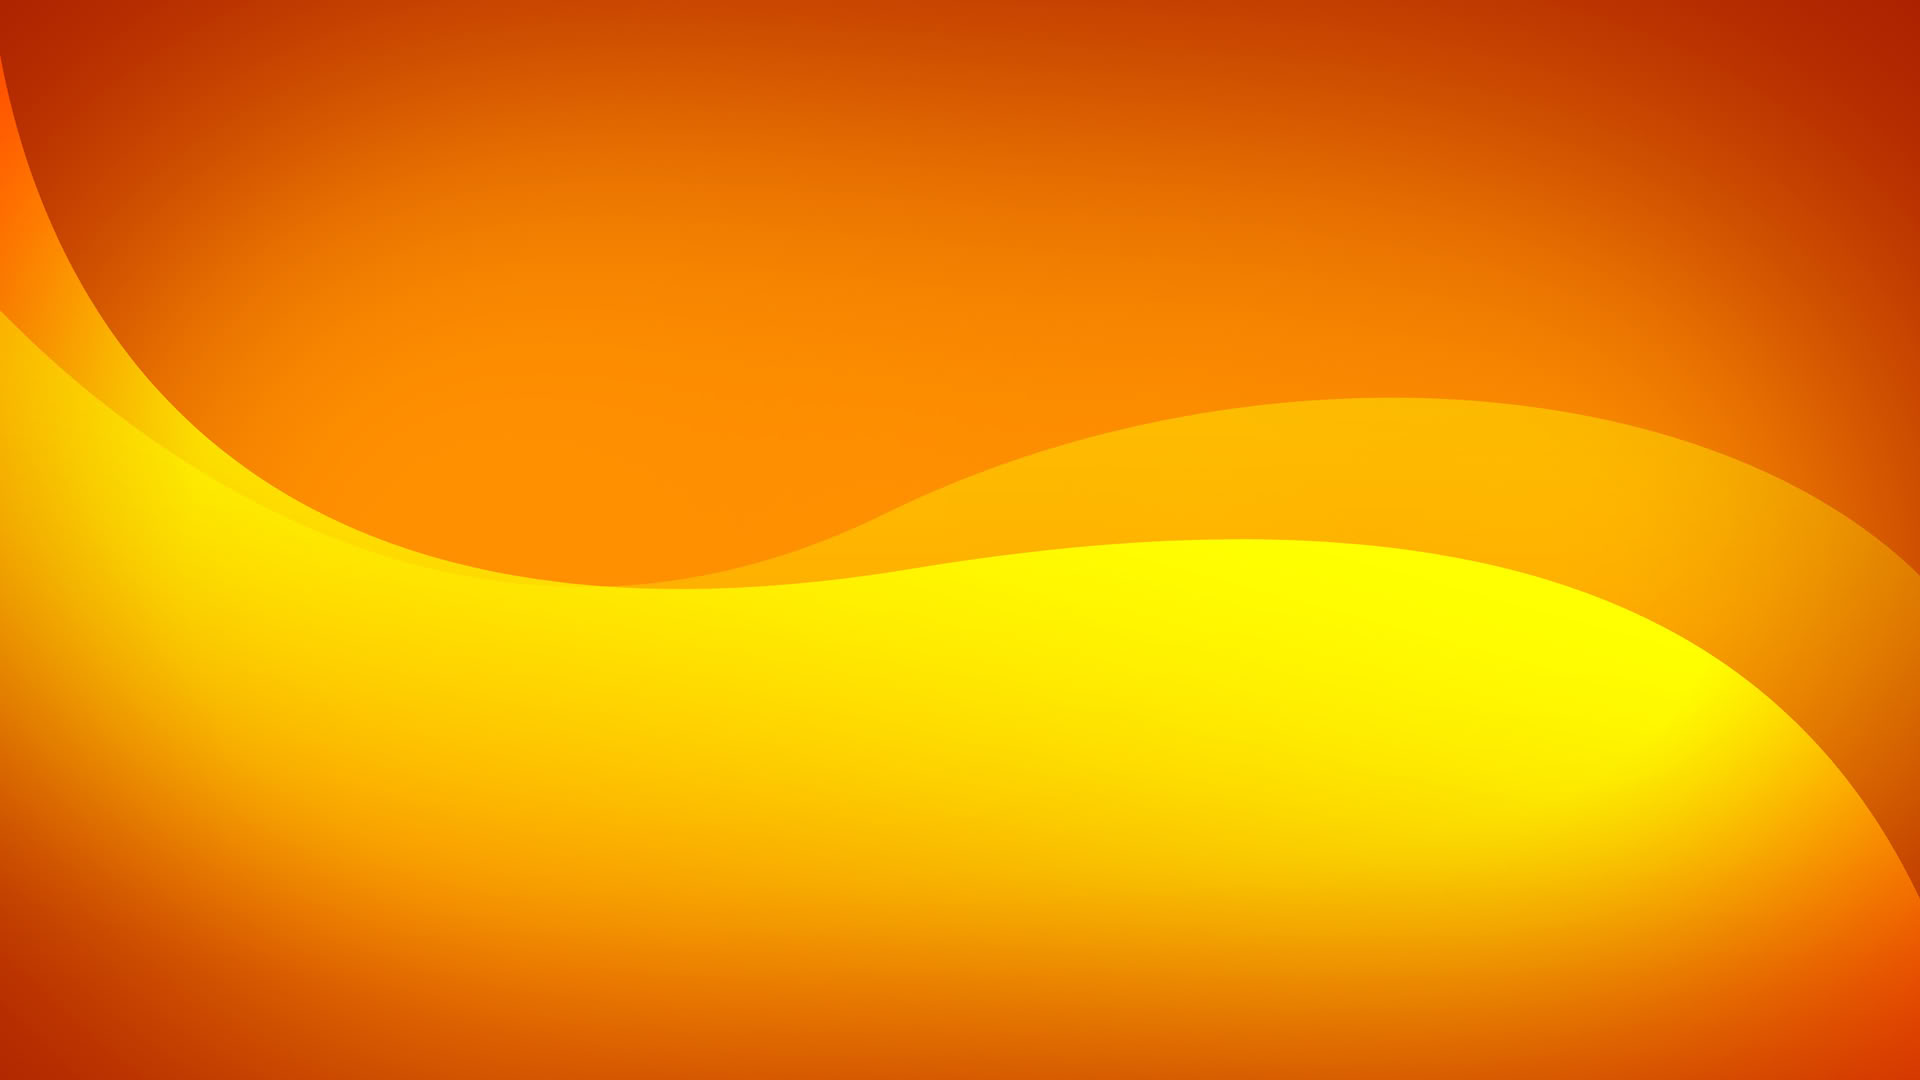 50+] Wallpaper Orange Color - WallpaperSafari